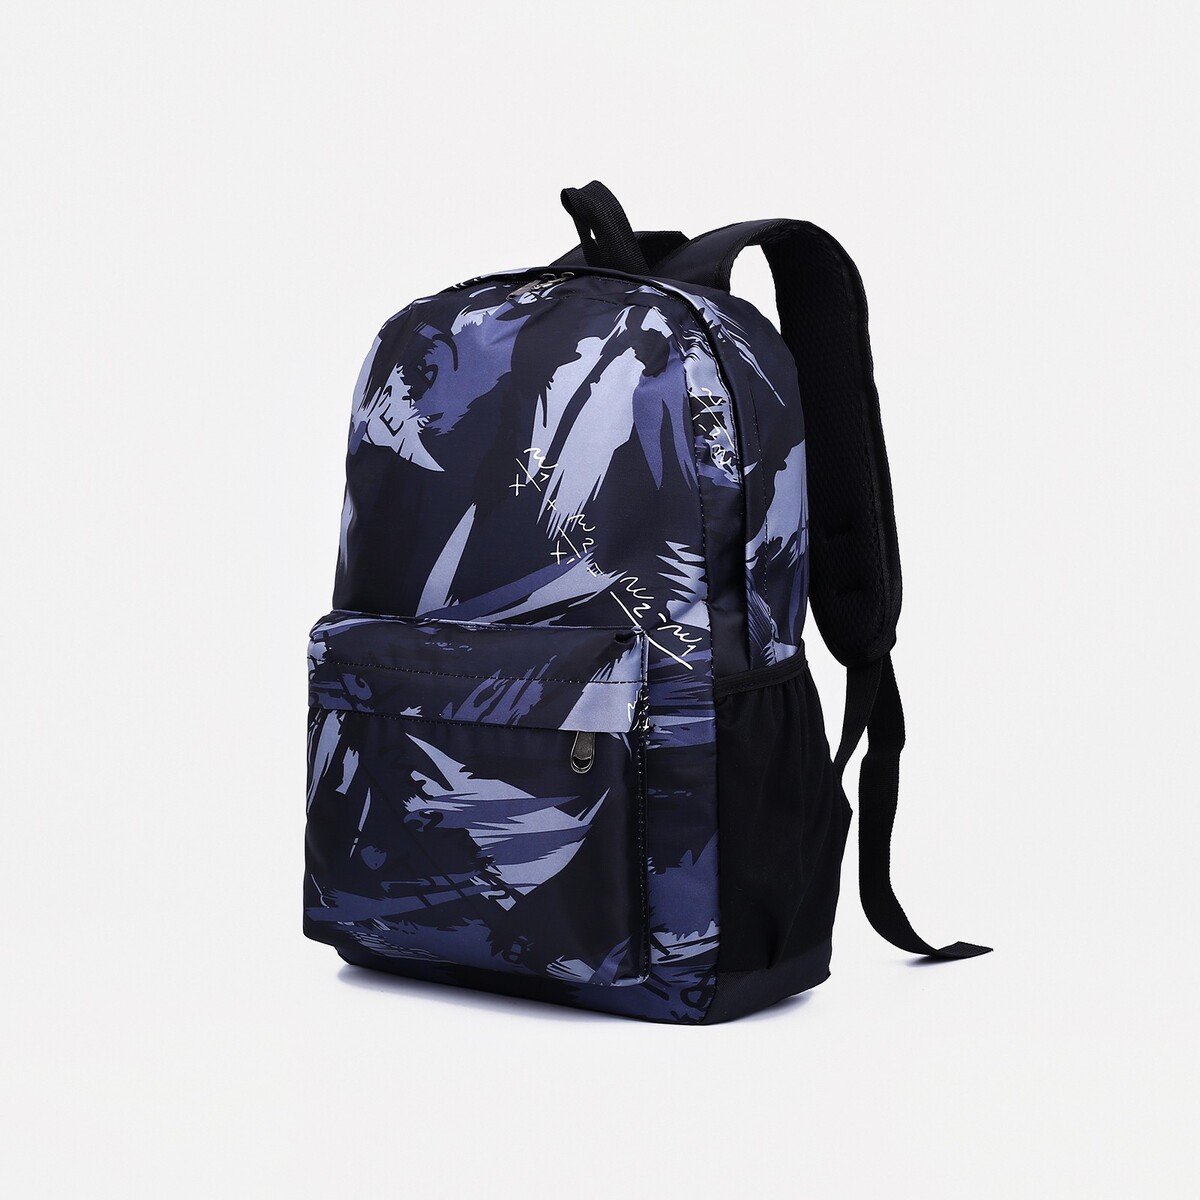 Рюкзак на молнии, 3 наружных кармана, цвет черный/серый рюкзак на молнии 3 наружных кармана серый голубой